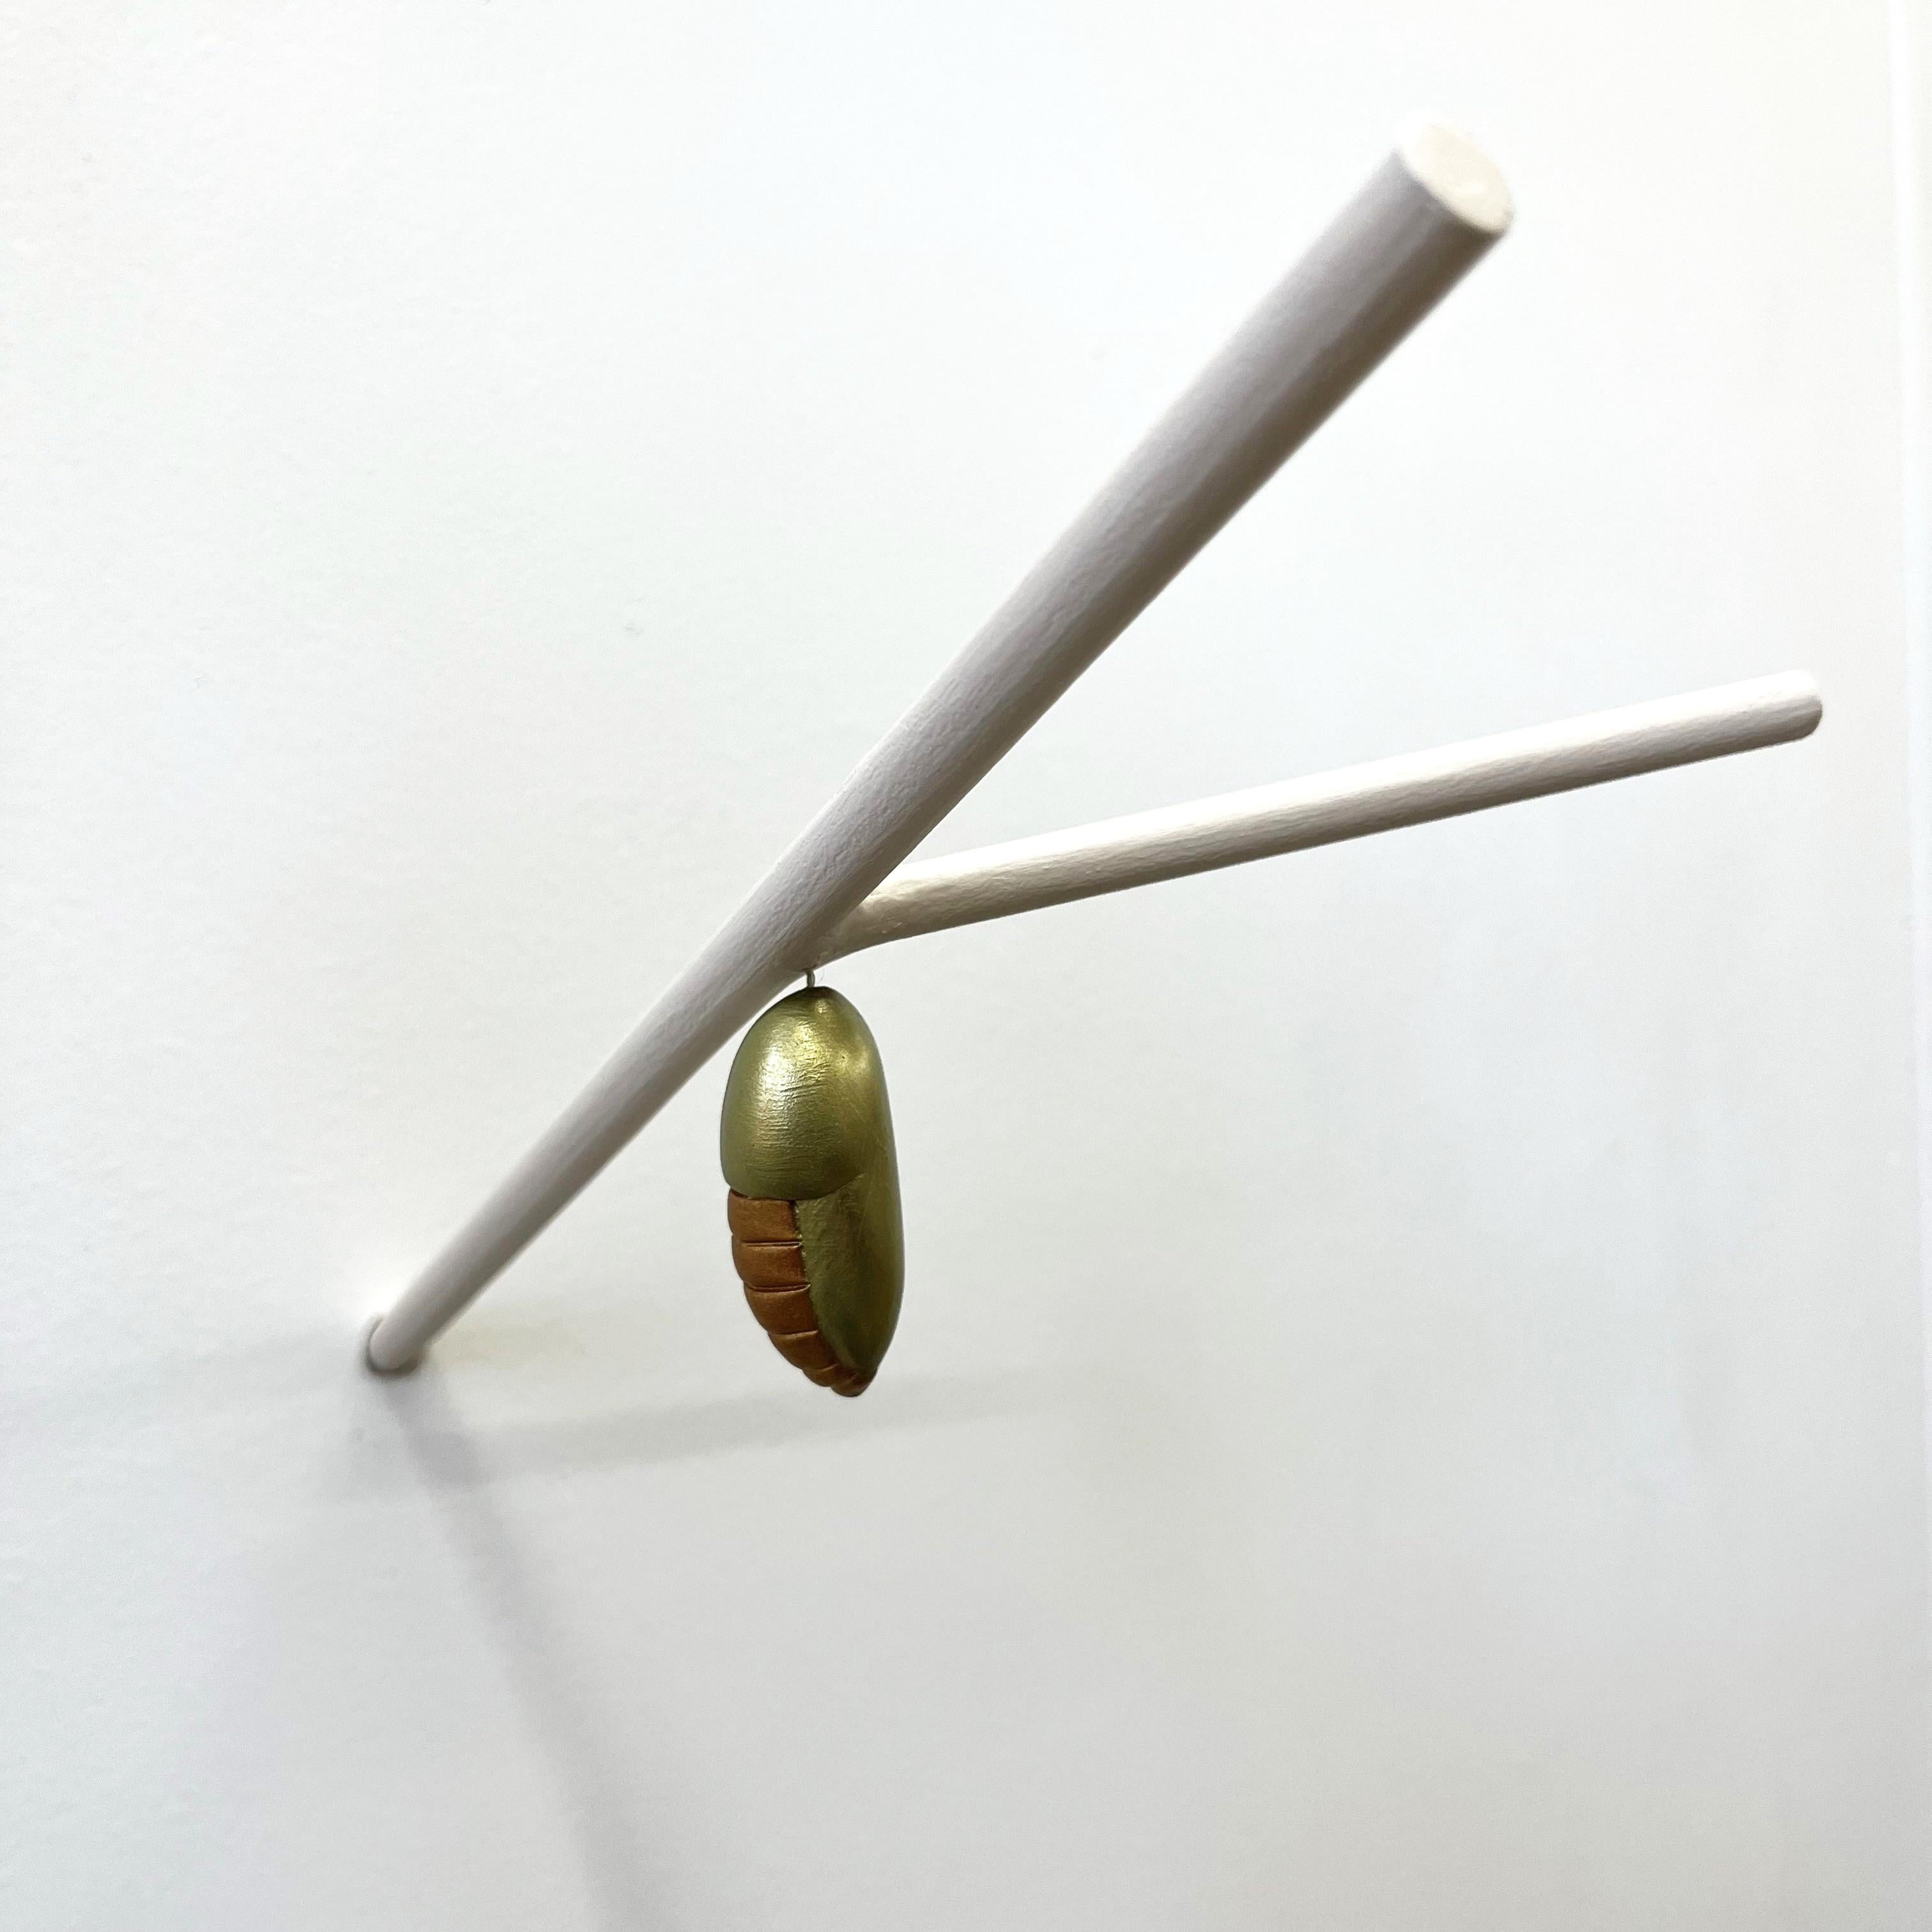 Chrysalis on a minimalist Branch (three) - Contemporary Mixed Media Art by Bethany Krull